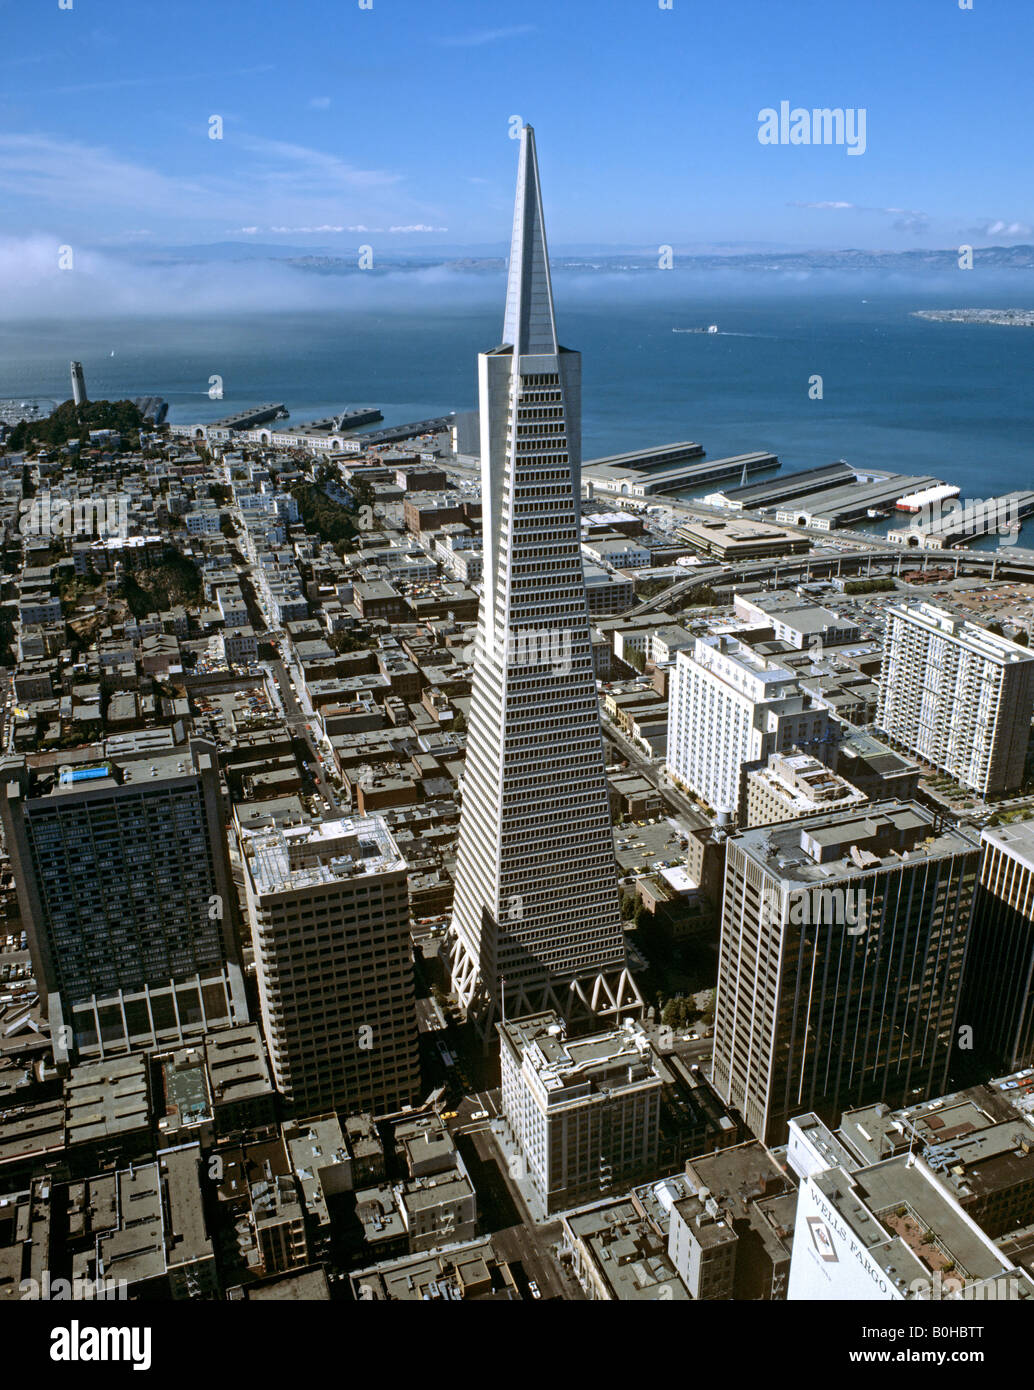 Aerial picture of the Transamerica Pyramid skyscraper in San Francisco, California, USA Stock Photo